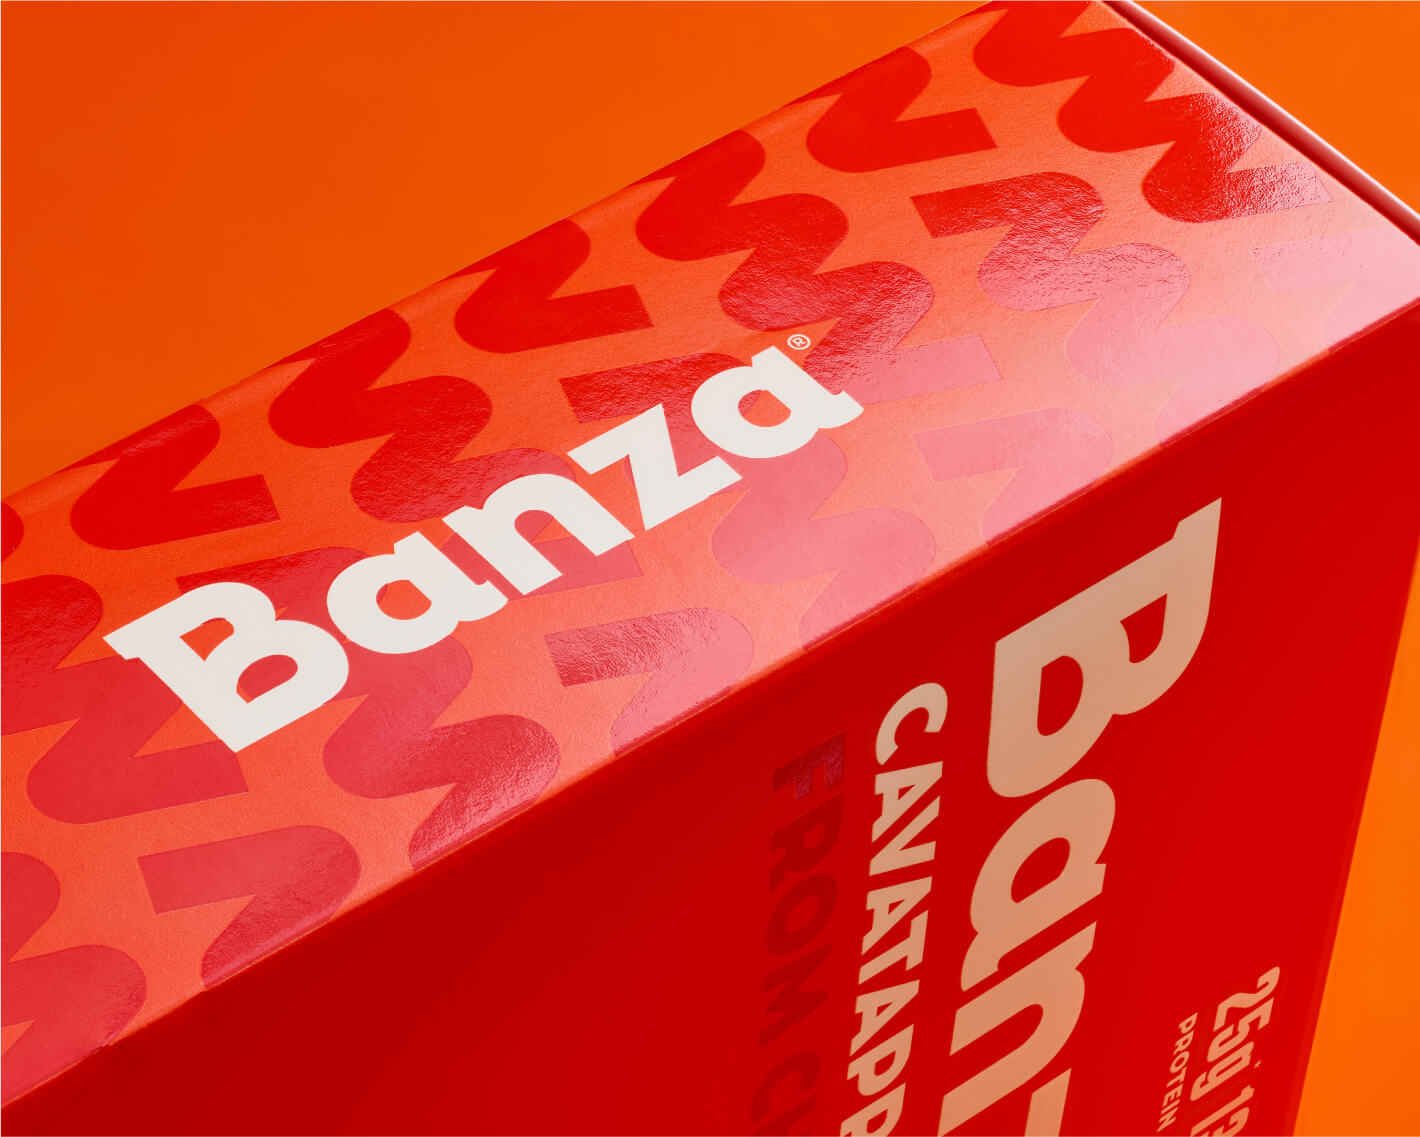 gander-banza-box-side@2x